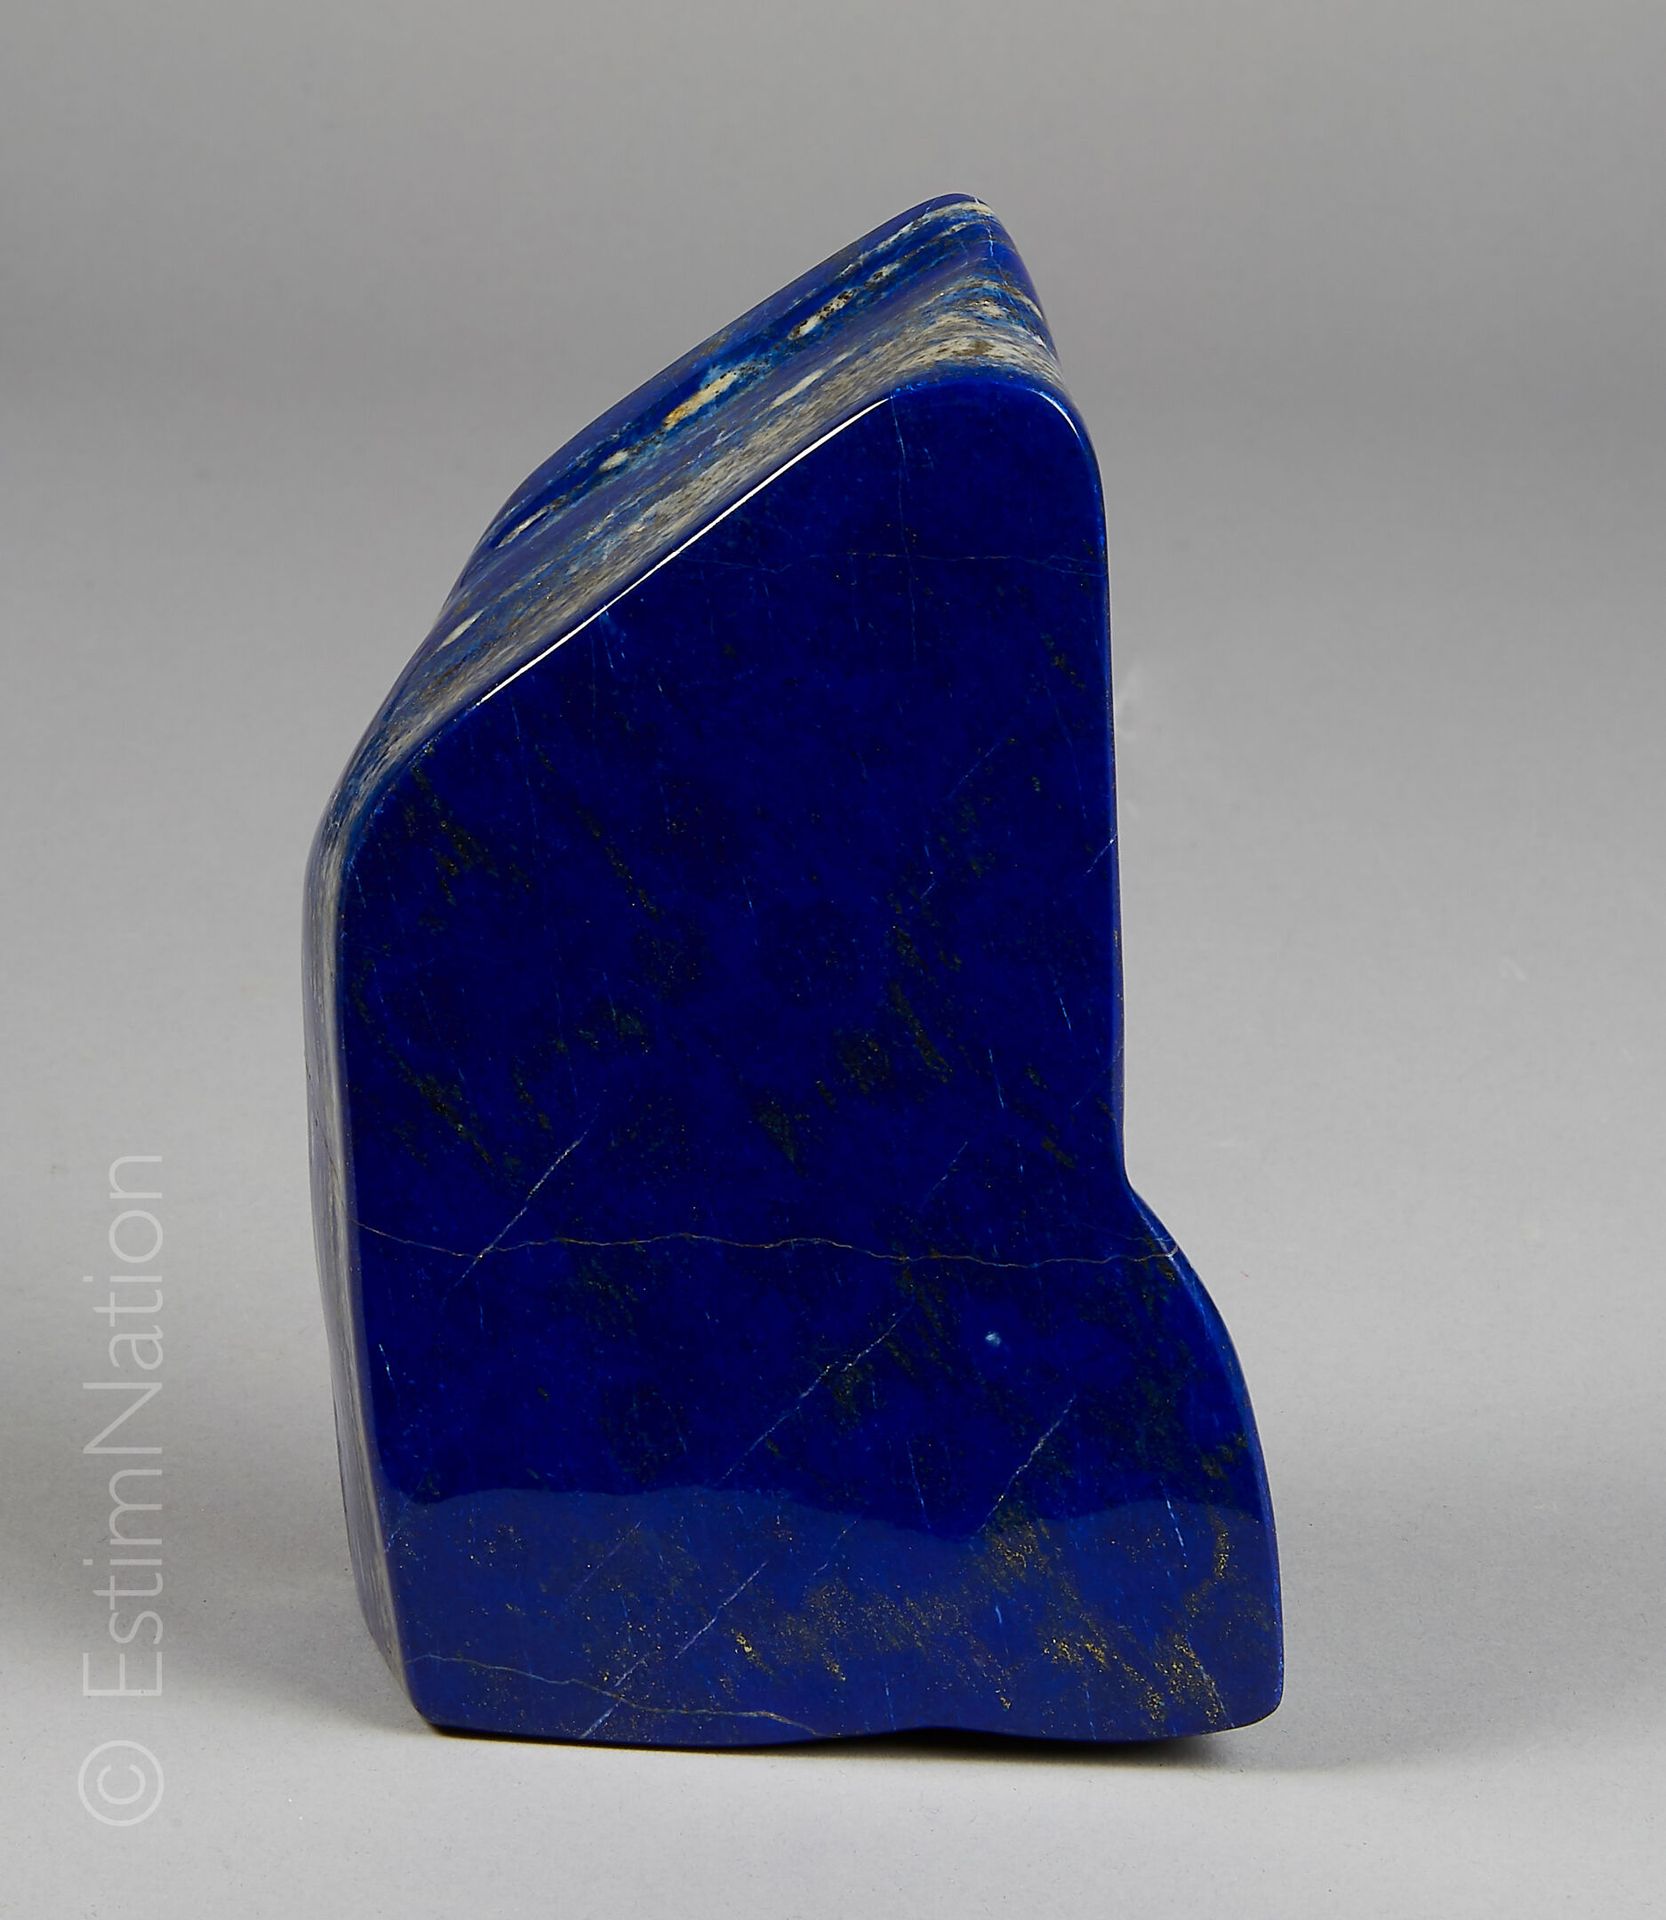 Lapis Lazuli 抛光块状的青金石。出处：阿富汗

尺寸：17.5 x 19.5 x 5.5厘米（约11500克）。

毛重：2.30公斤